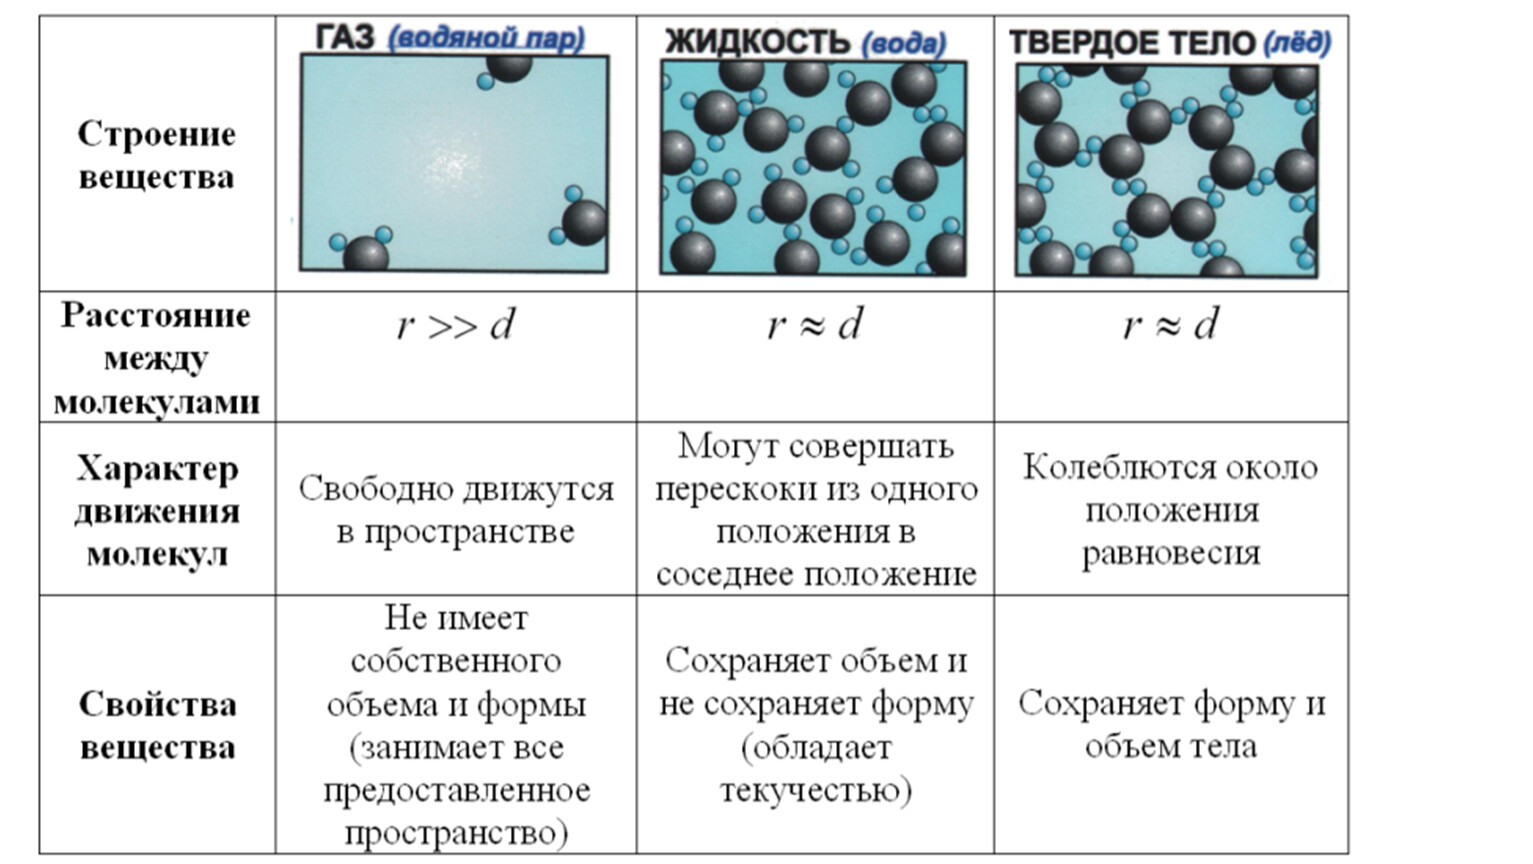 Свойство веществ твердое тело. Молекулярные кинетические теории основные таблица. Таблица агрегатных состояний МКТ. Агрегатное состояние вещества таблица строение молекул. Молекулярно-кинетическая теория агрегатных состояний.